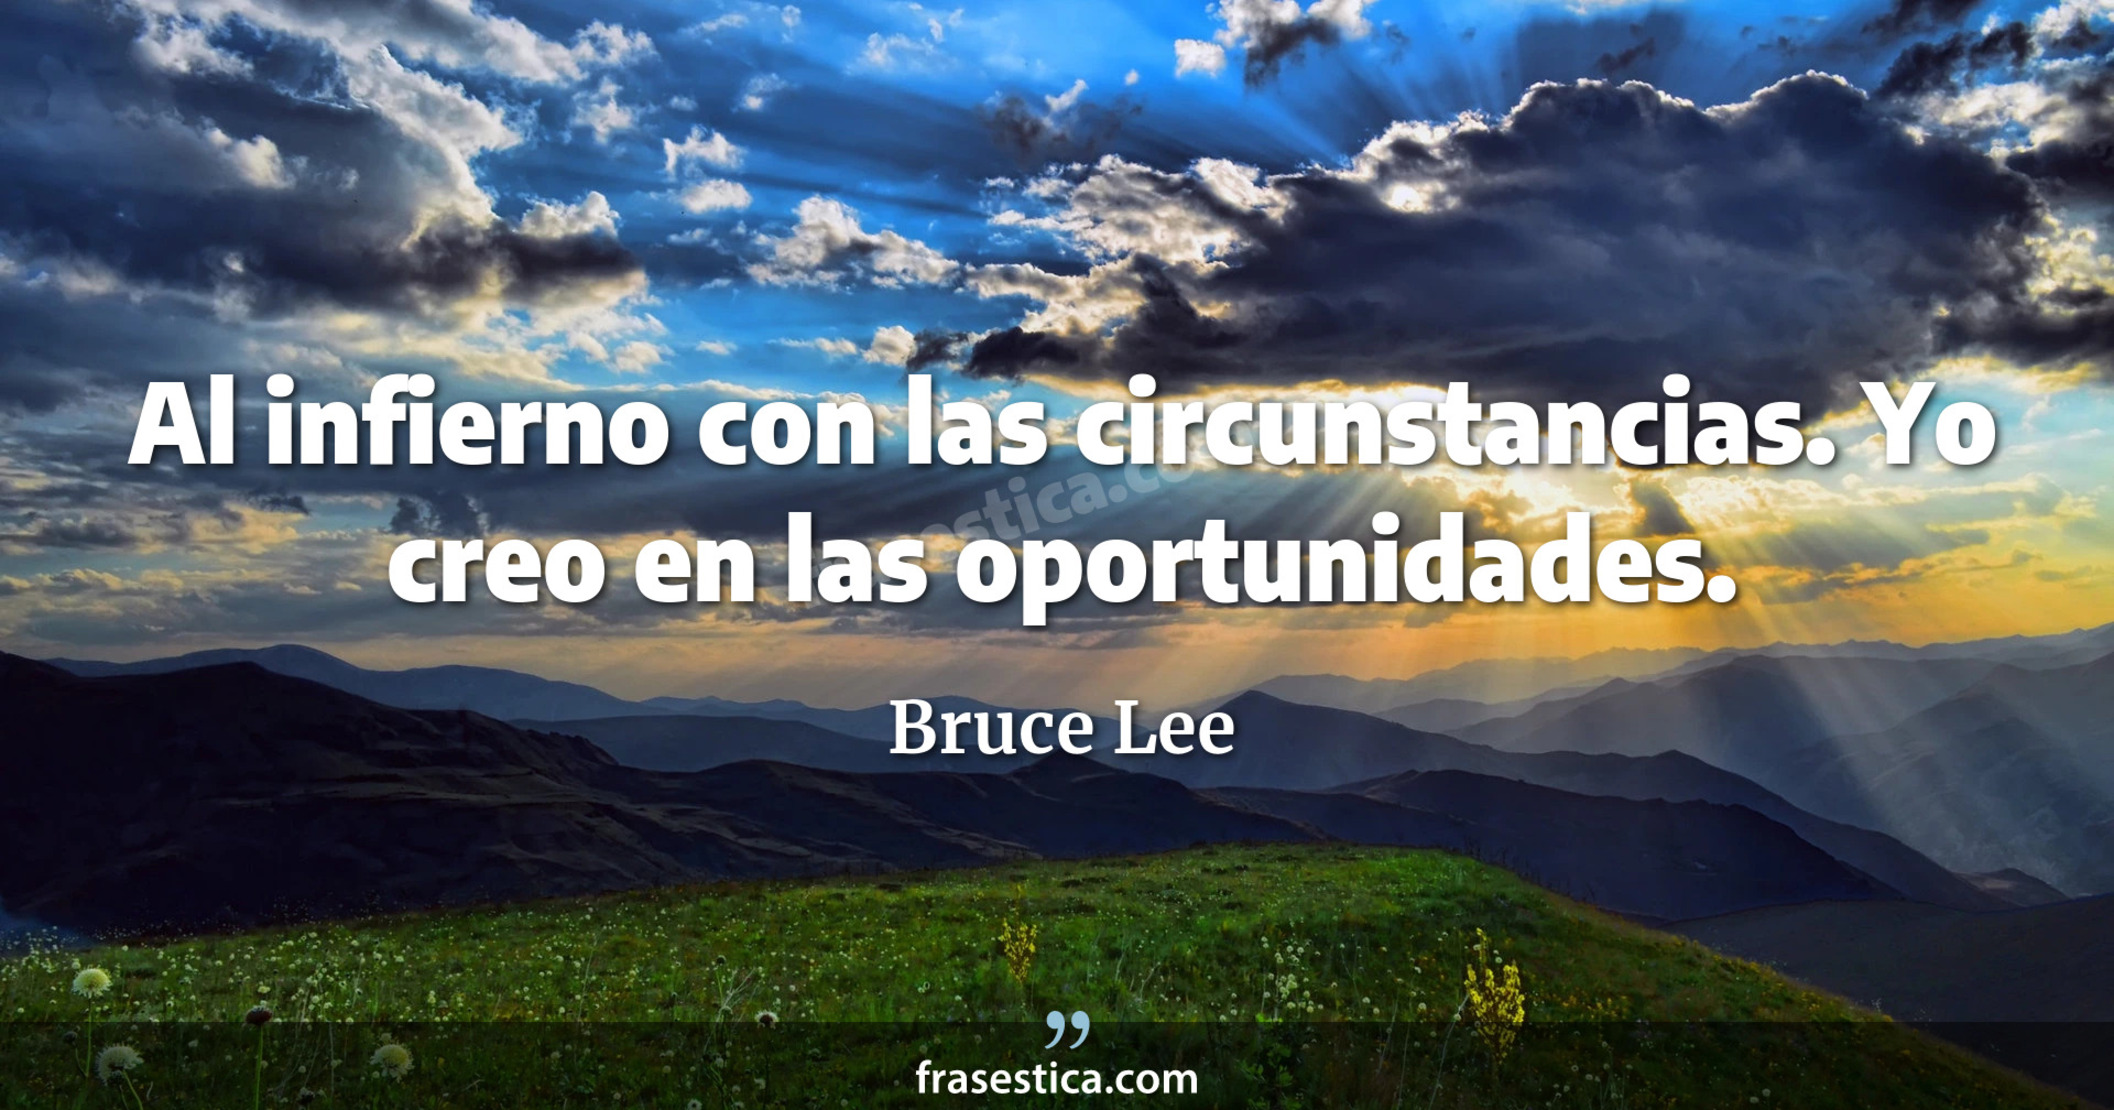 Al infierno con las circunstancias. Yo creo en las oportunidades. - Bruce Lee